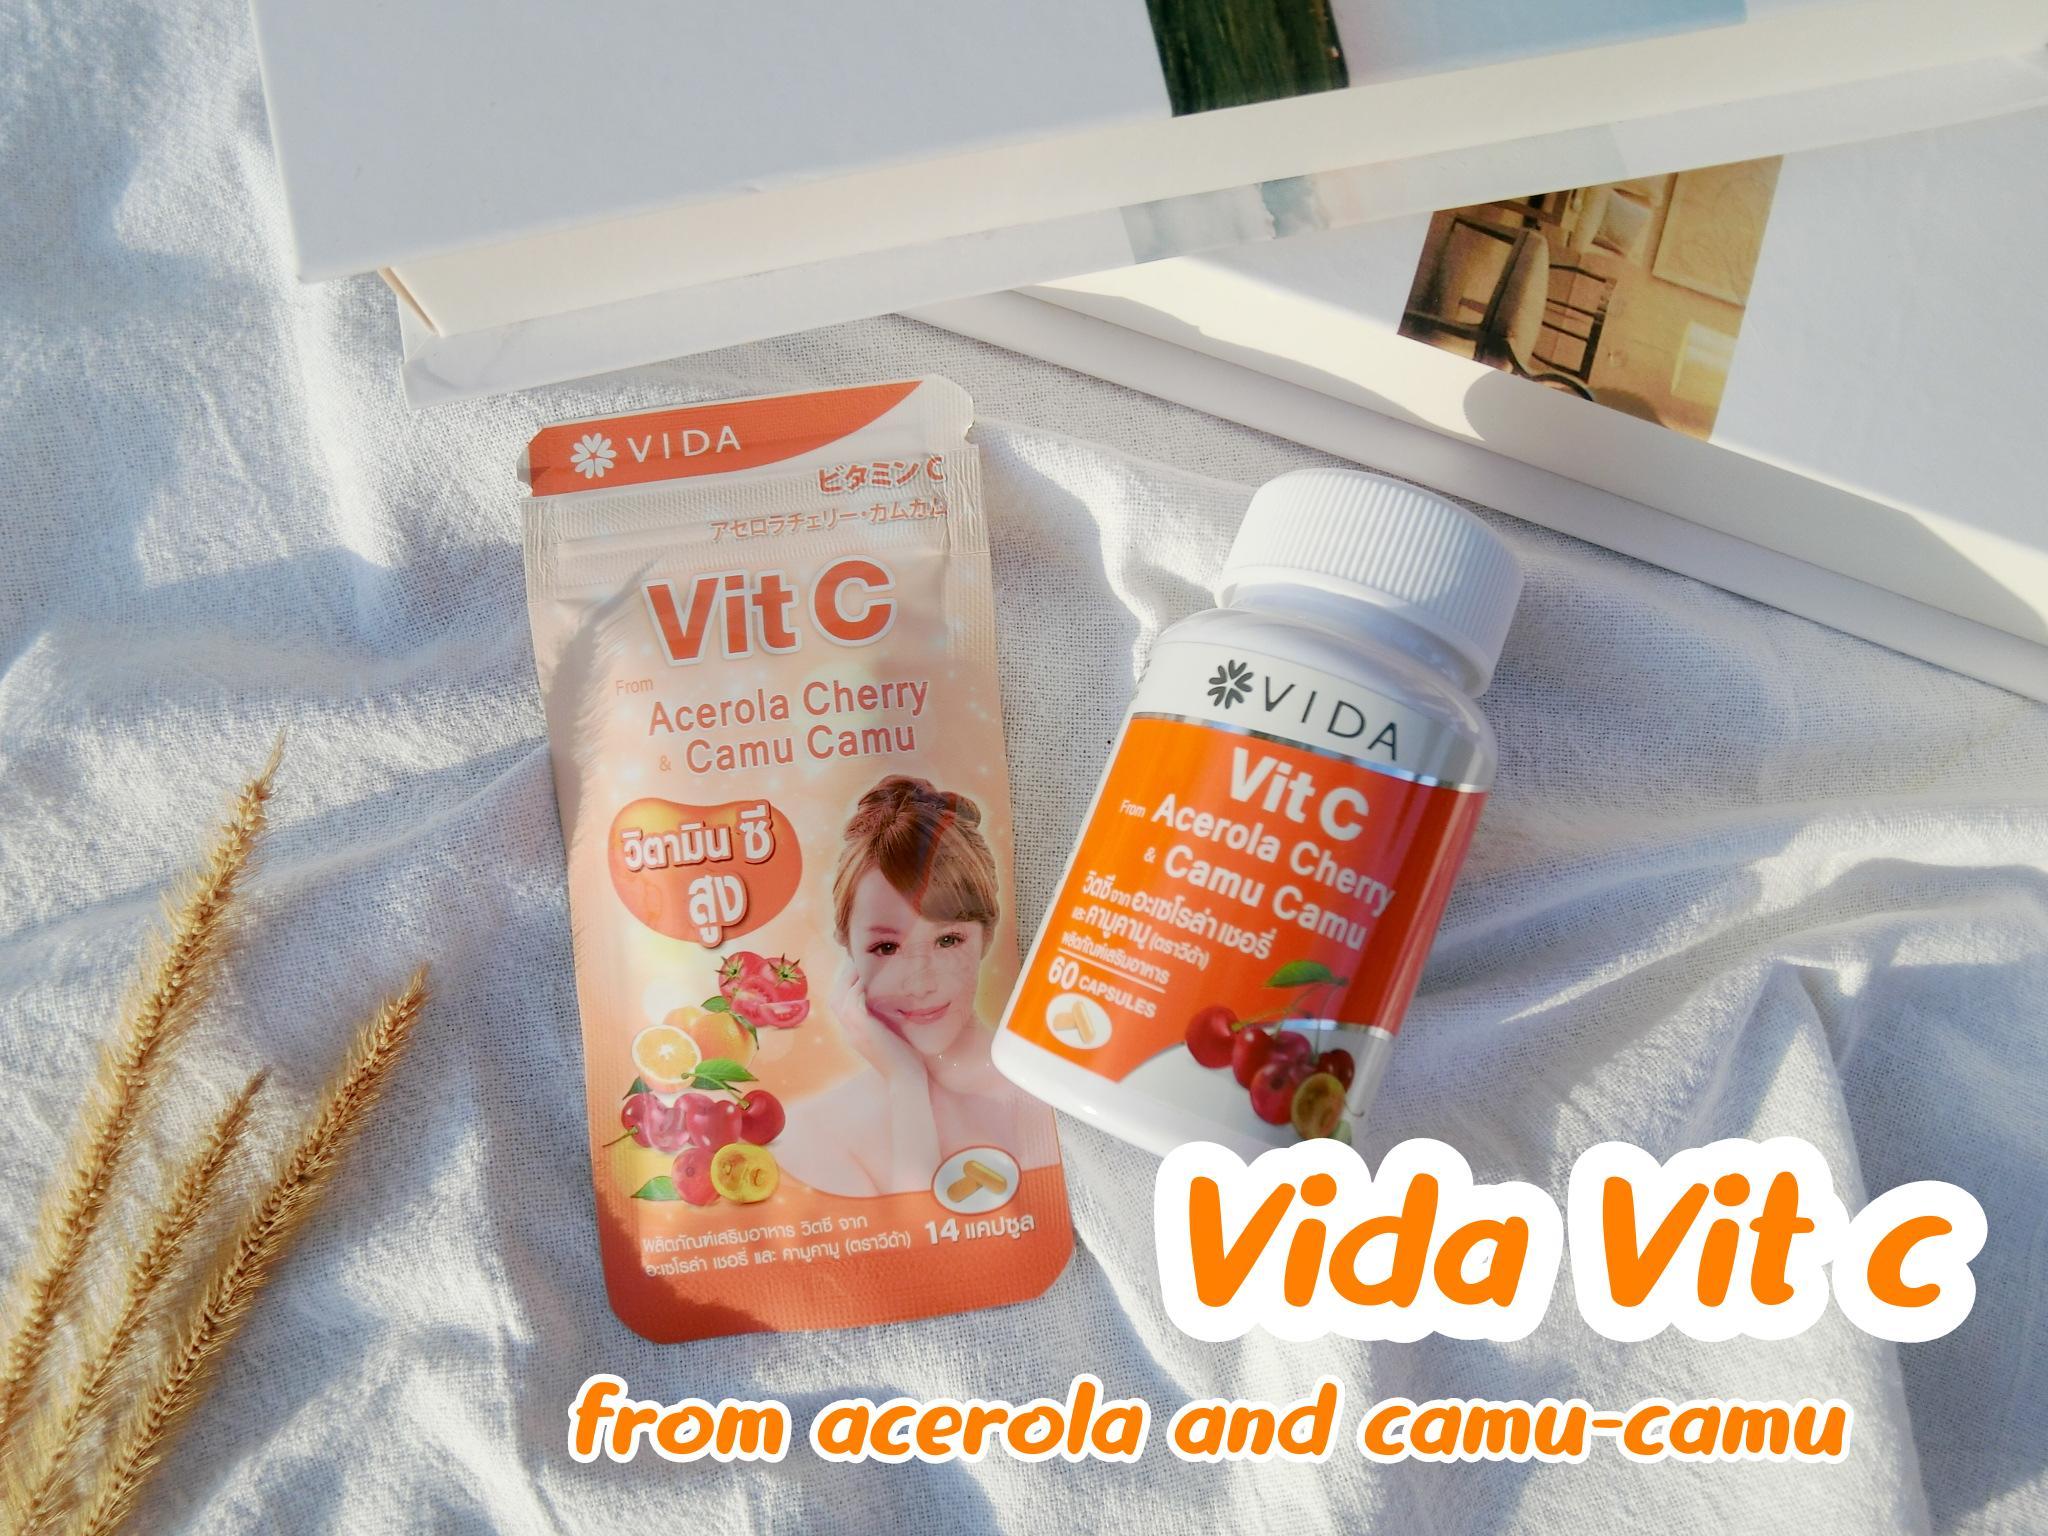 ภาพหน้าปก แชร์ไอเทมเรื่องสุขภาพและผิวดีๆ ด้วย Vida Vit c from acerola and camu-camu  ที่:0